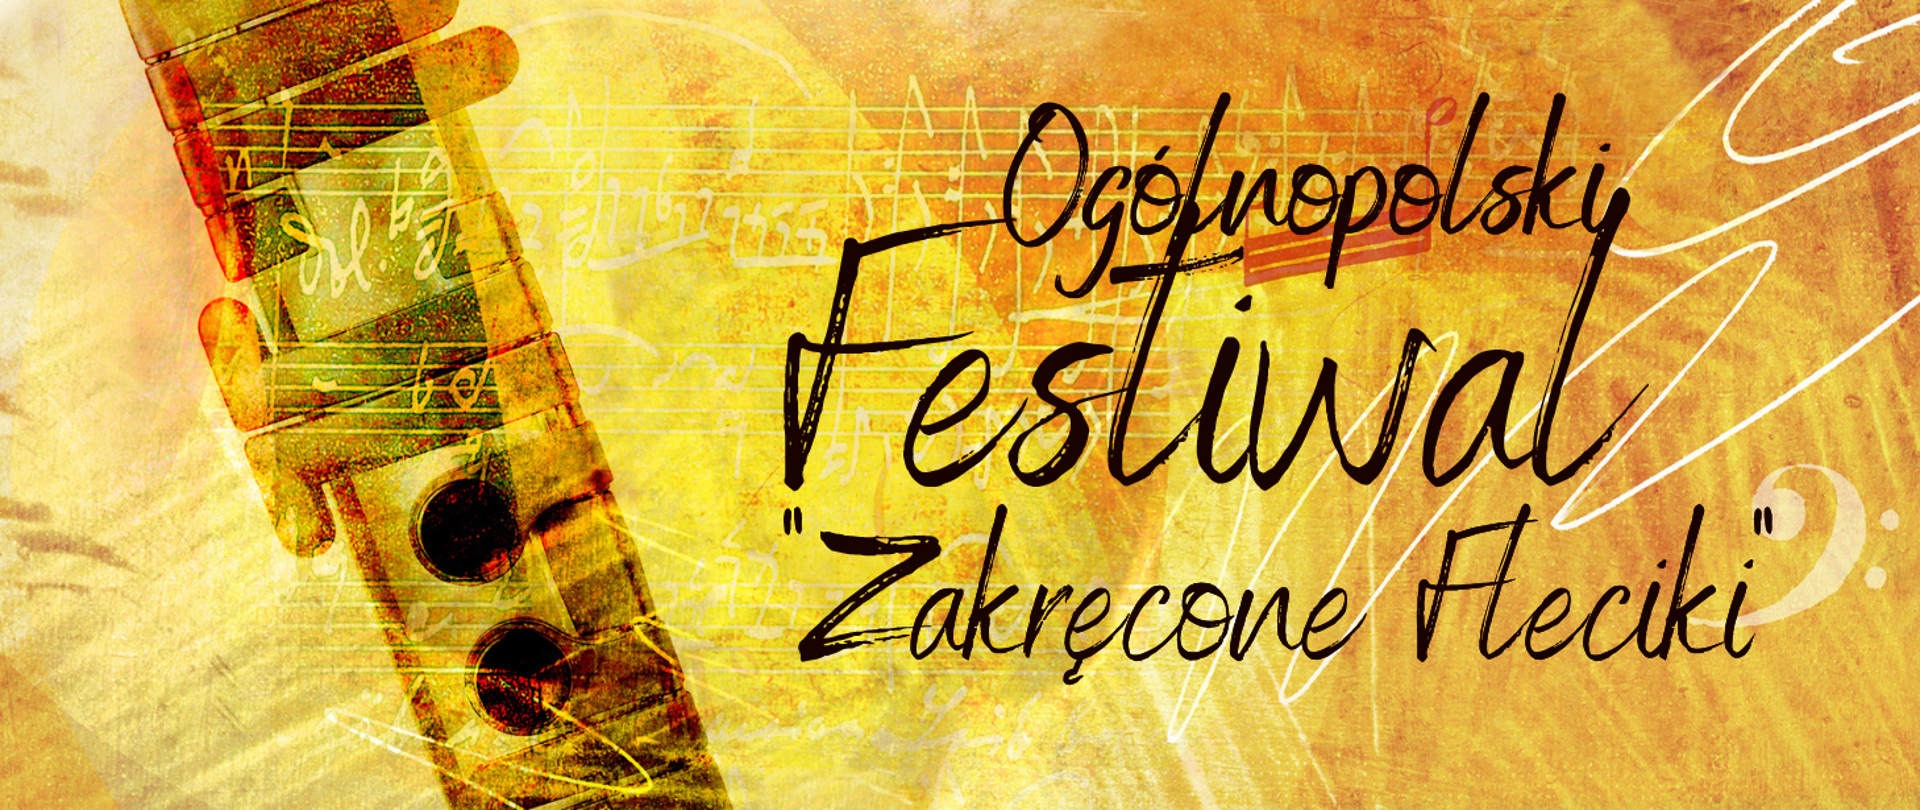 Kolorowa grafika tło w odcieniach żółto, pomarańczowych, na nim delikatne pięciolinie i nutki (w kolorze białym) a z lewej strony pod skosem grafika części fletu (kolor brązowo-żółty) z prawej strony , za fletem czarny napis Ogólnopolski Festiwal "Zakręcone Fleciki" 